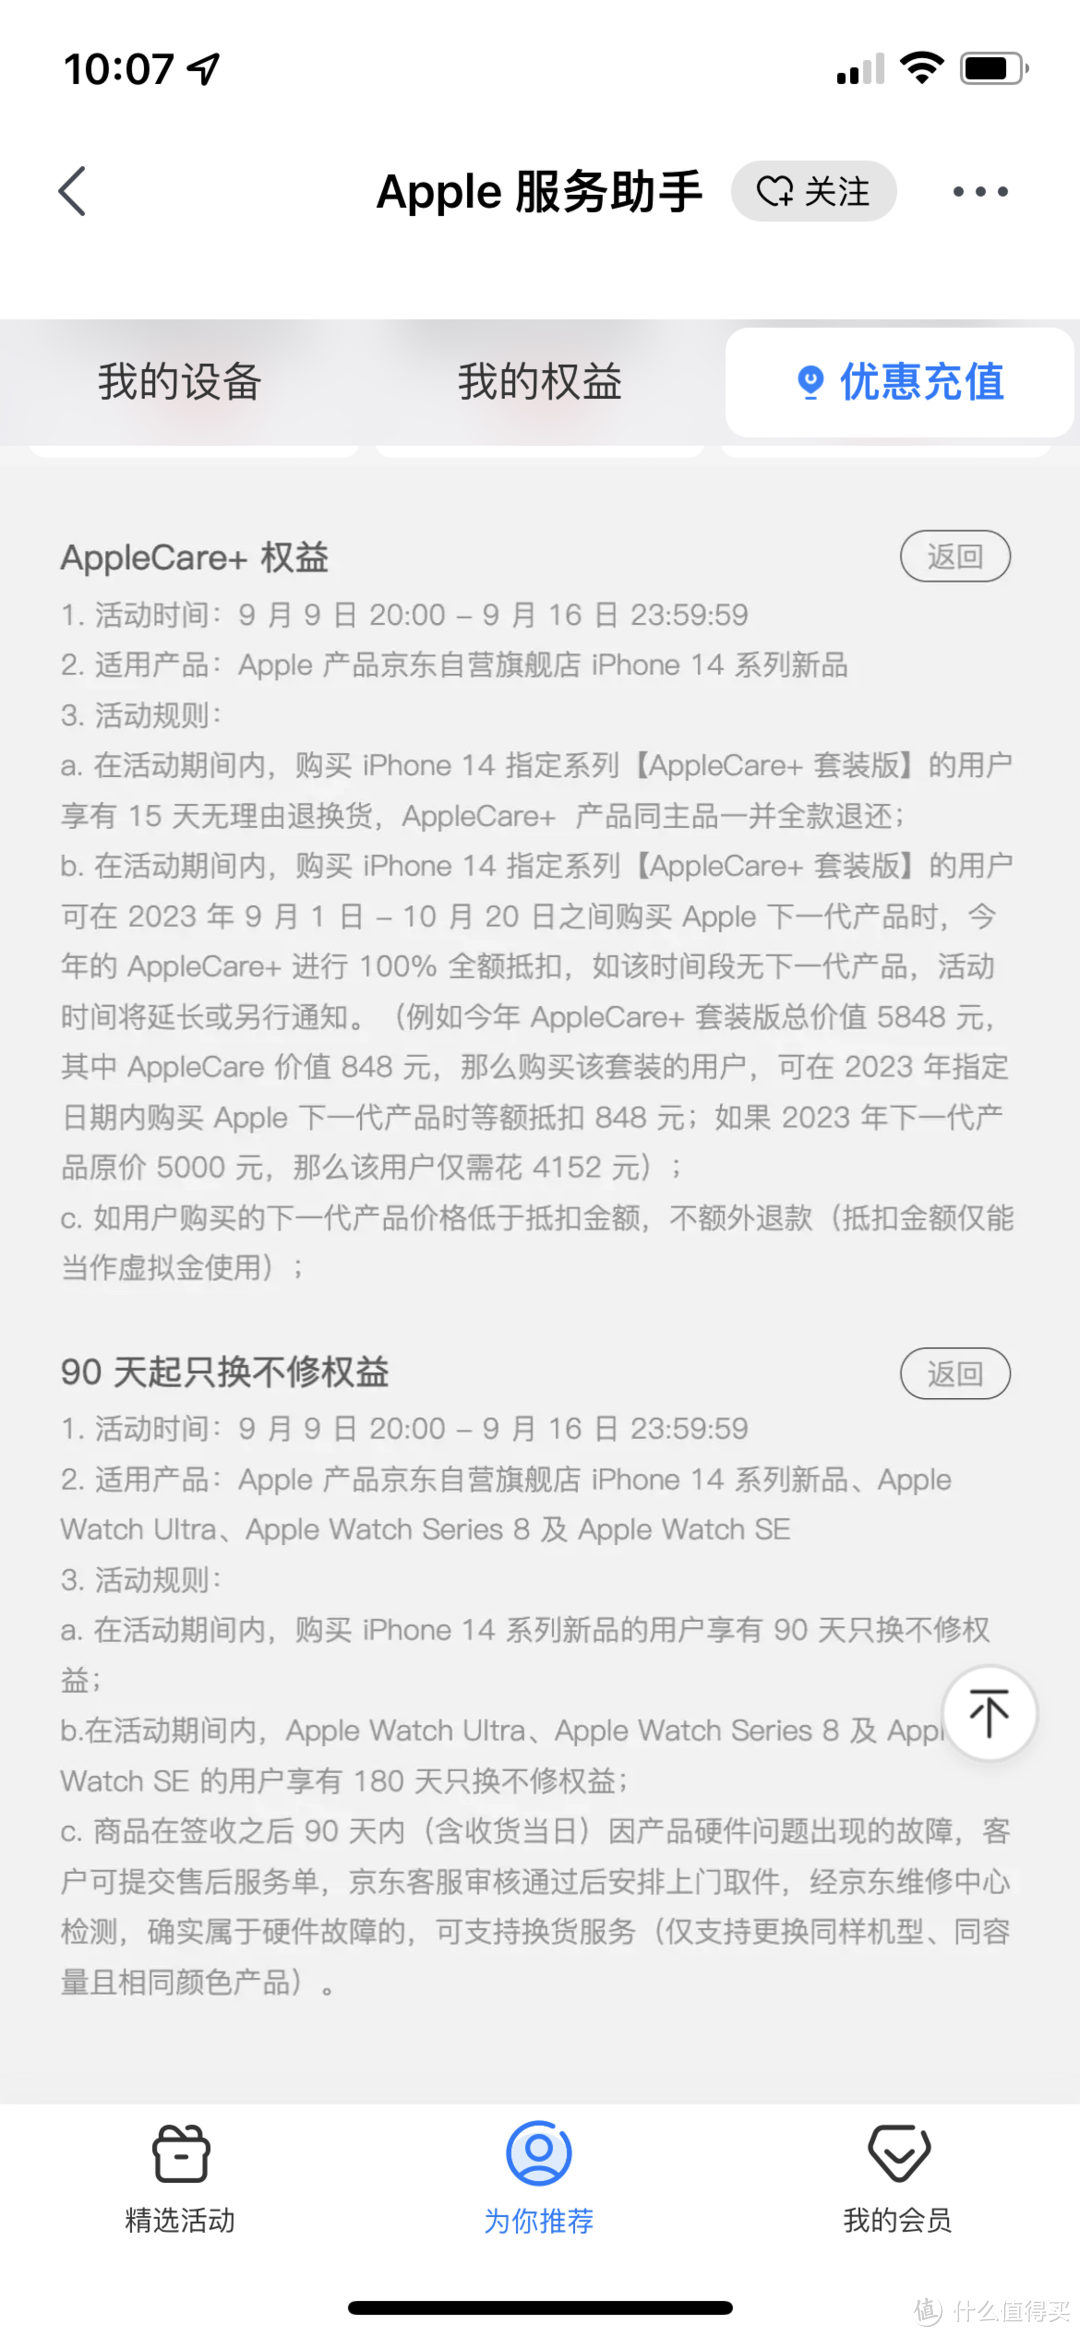 苹果官网、拼多多、京东购买 iPhone 14 系列分别有什么优势